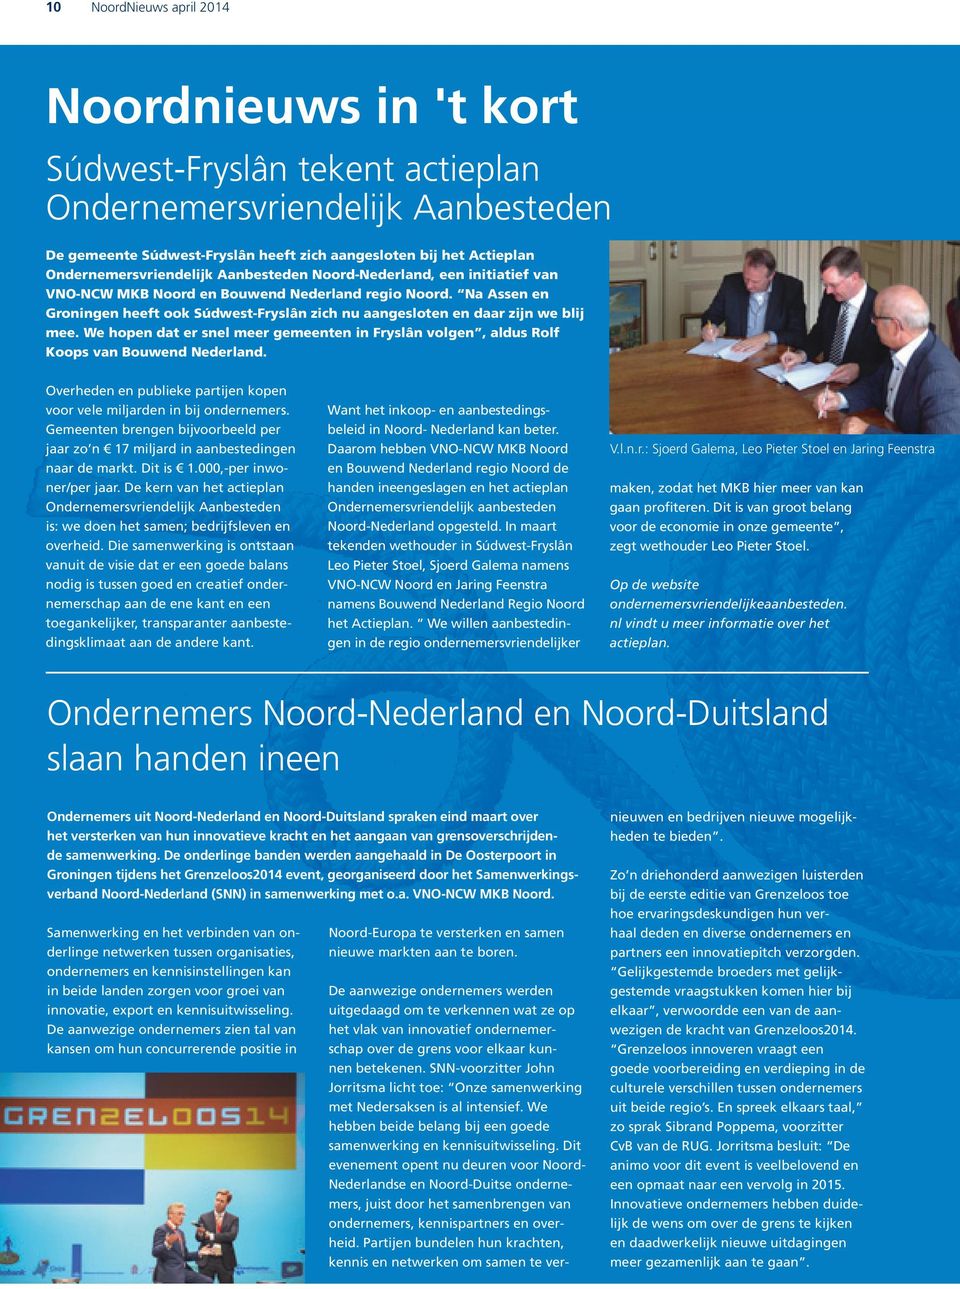 Na Assen en Groningen heeft ook Súdwest-Fryslân zich nu aangesloten en daar zijn we blij mee. We hopen dat er snel meer gemeenten in Fryslân volgen, aldus Rolf Koops van Bouwend Nederland.